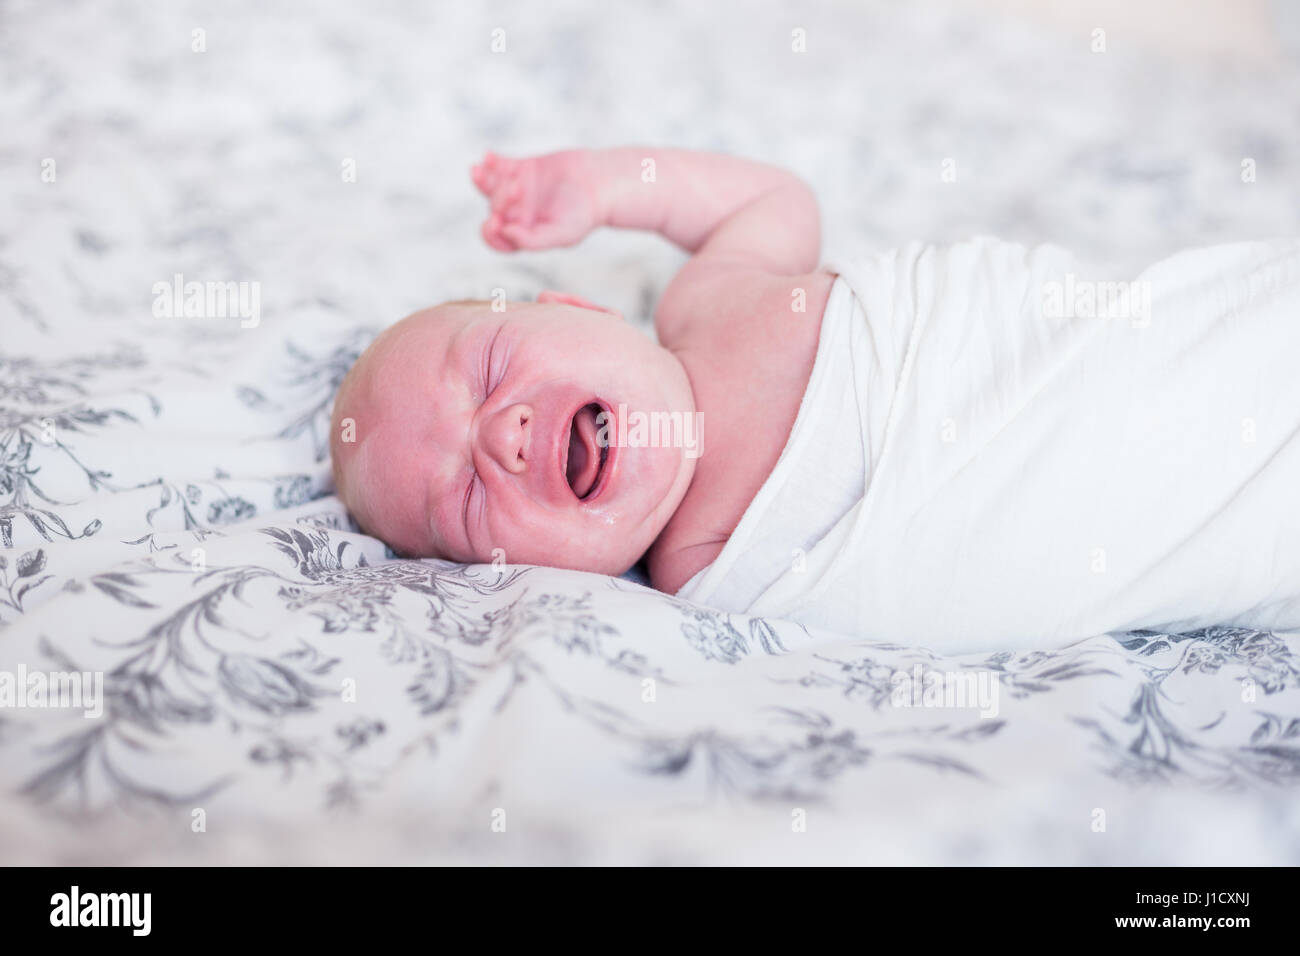 Neugeborenes Baby im Bett Weinen. Natürliches Licht, geringe Schärfentiefe, Textfreiraum. Stockfoto